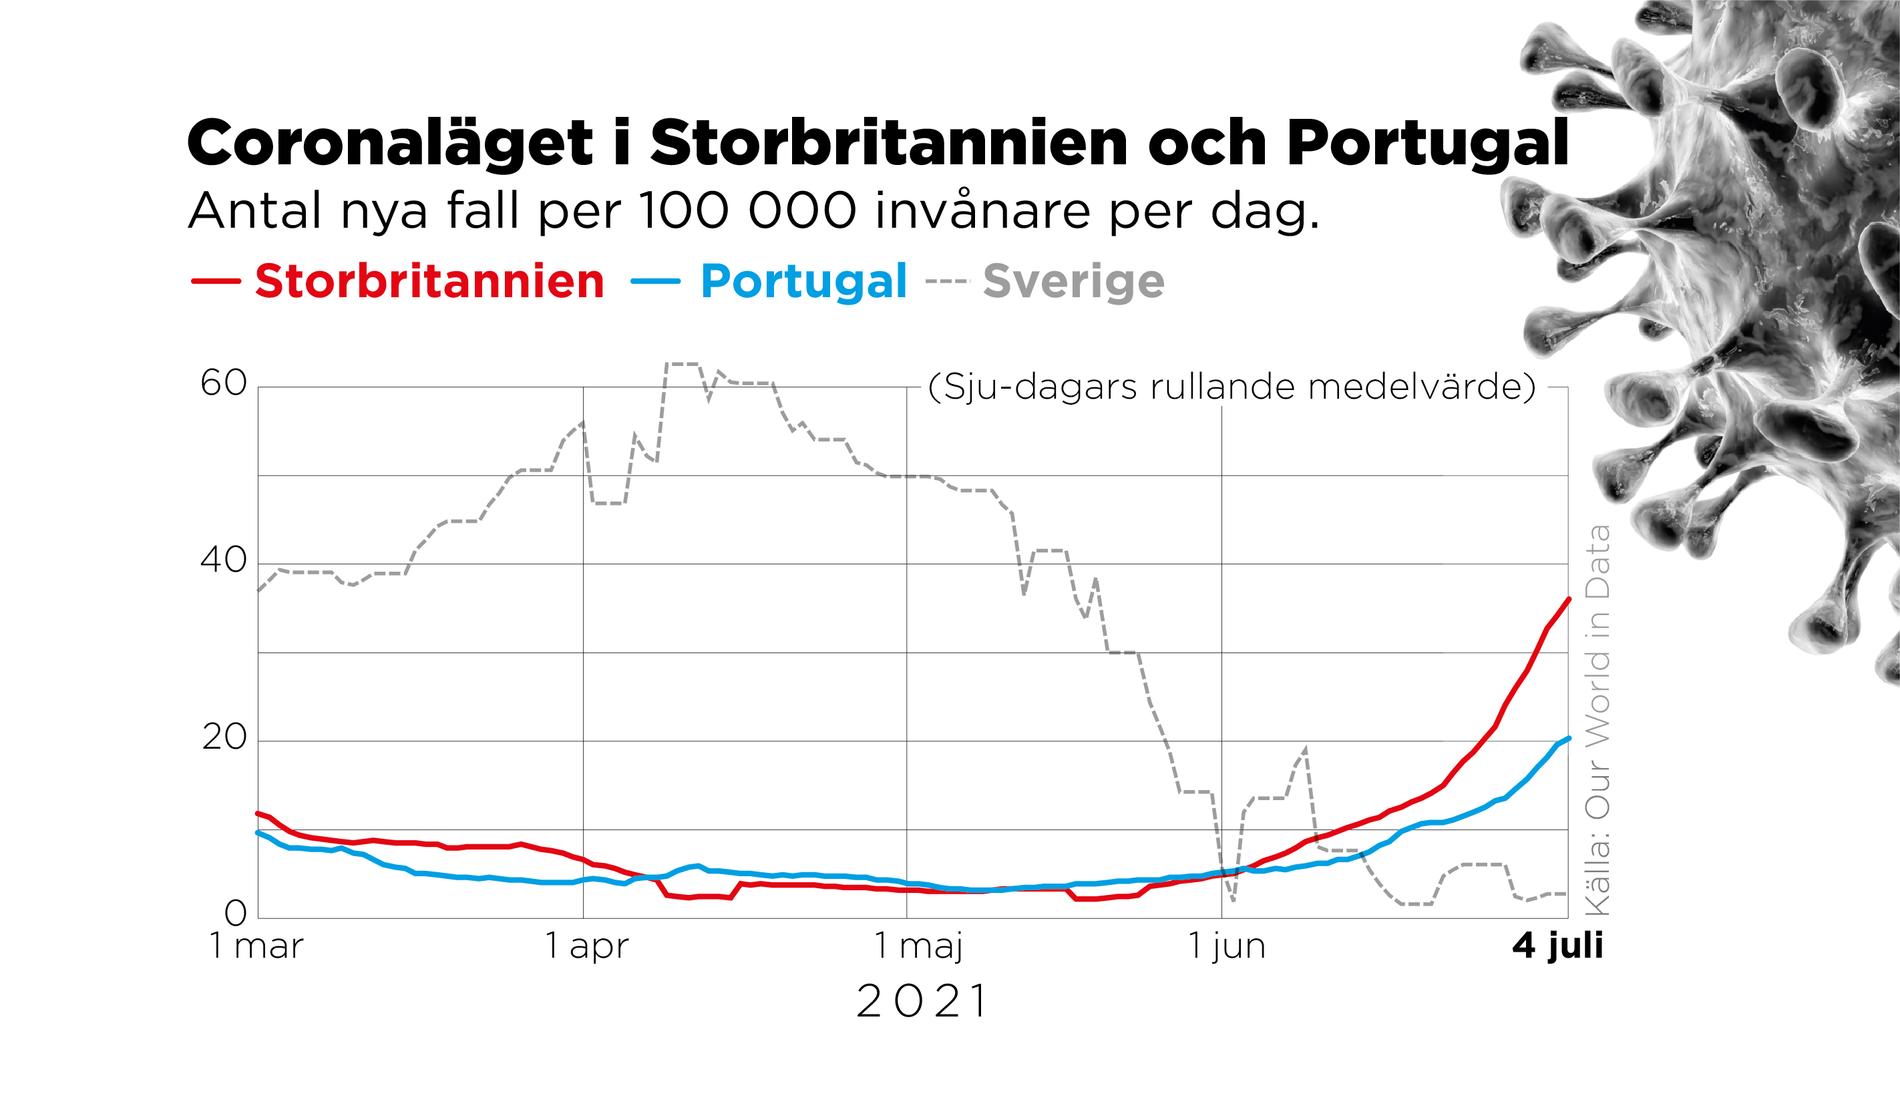 Antal nya fall per 100 000 invånare per dag i Sverige, Portugal och Storbritannien.